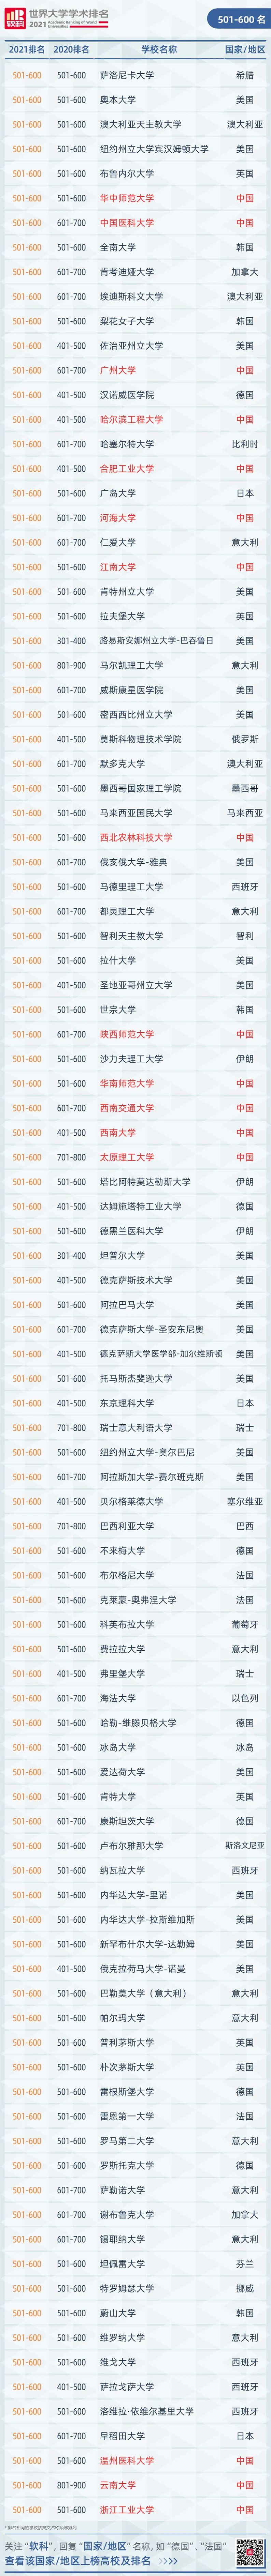 中国高校排名